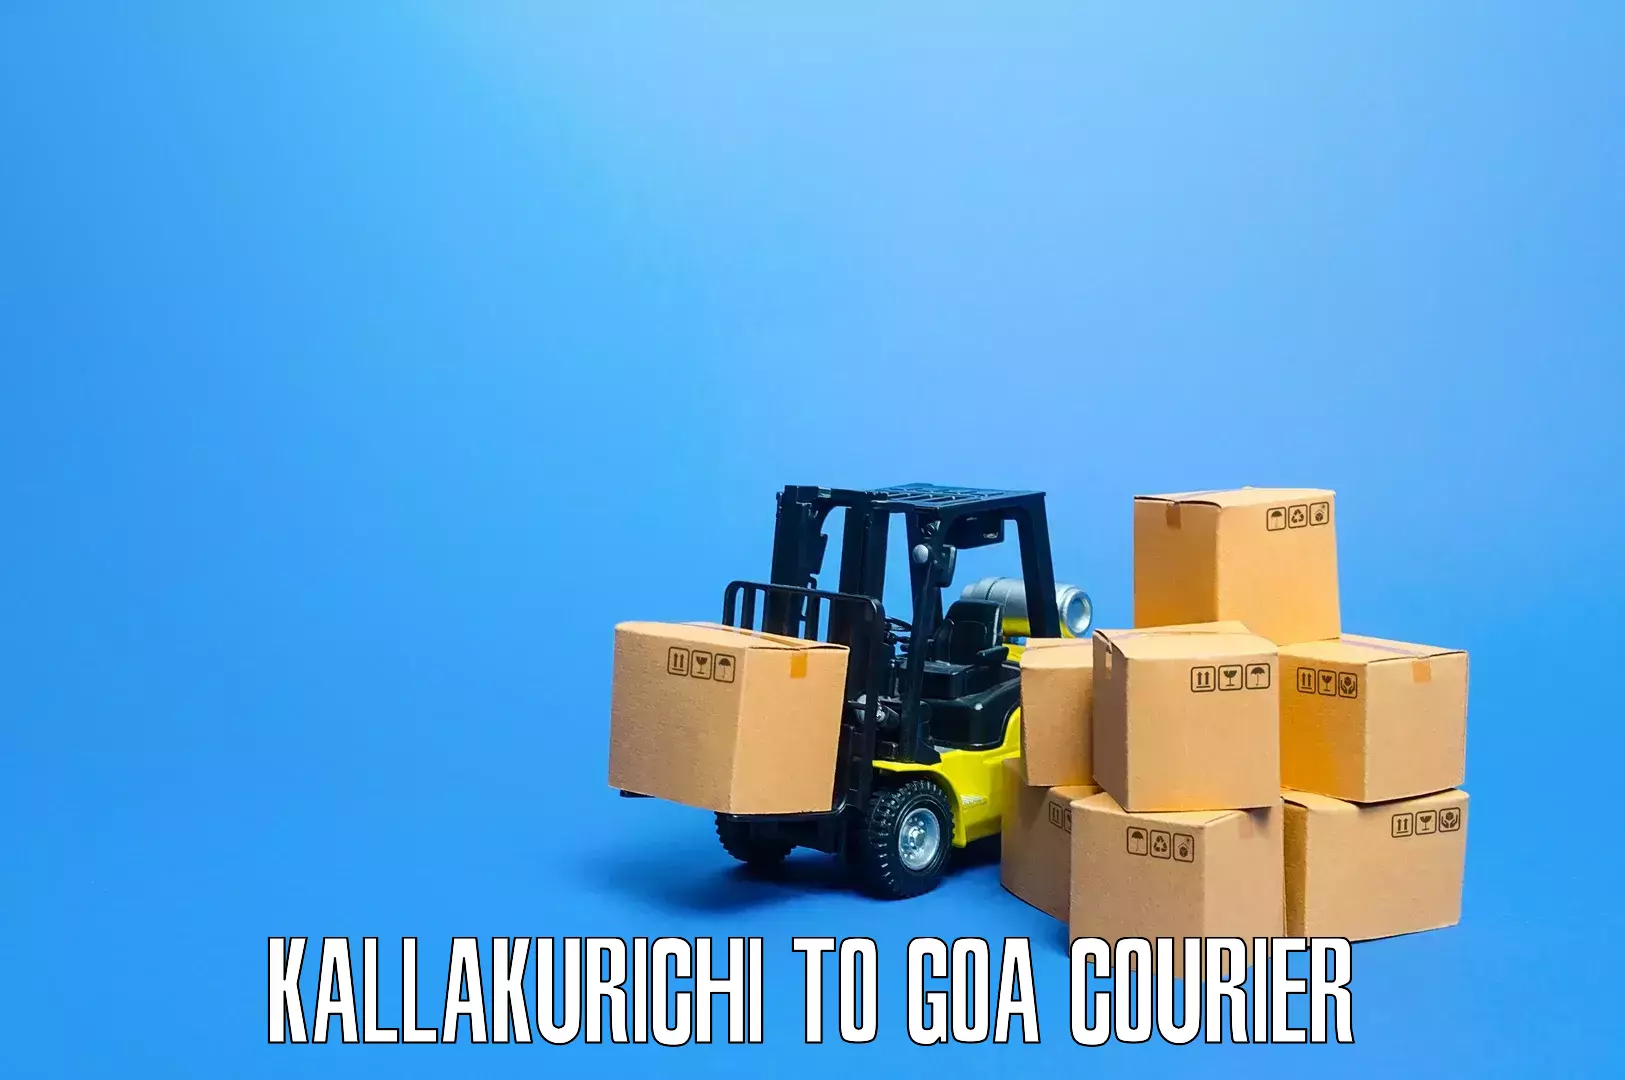 Furniture shipping services Kallakurichi to Bicholim